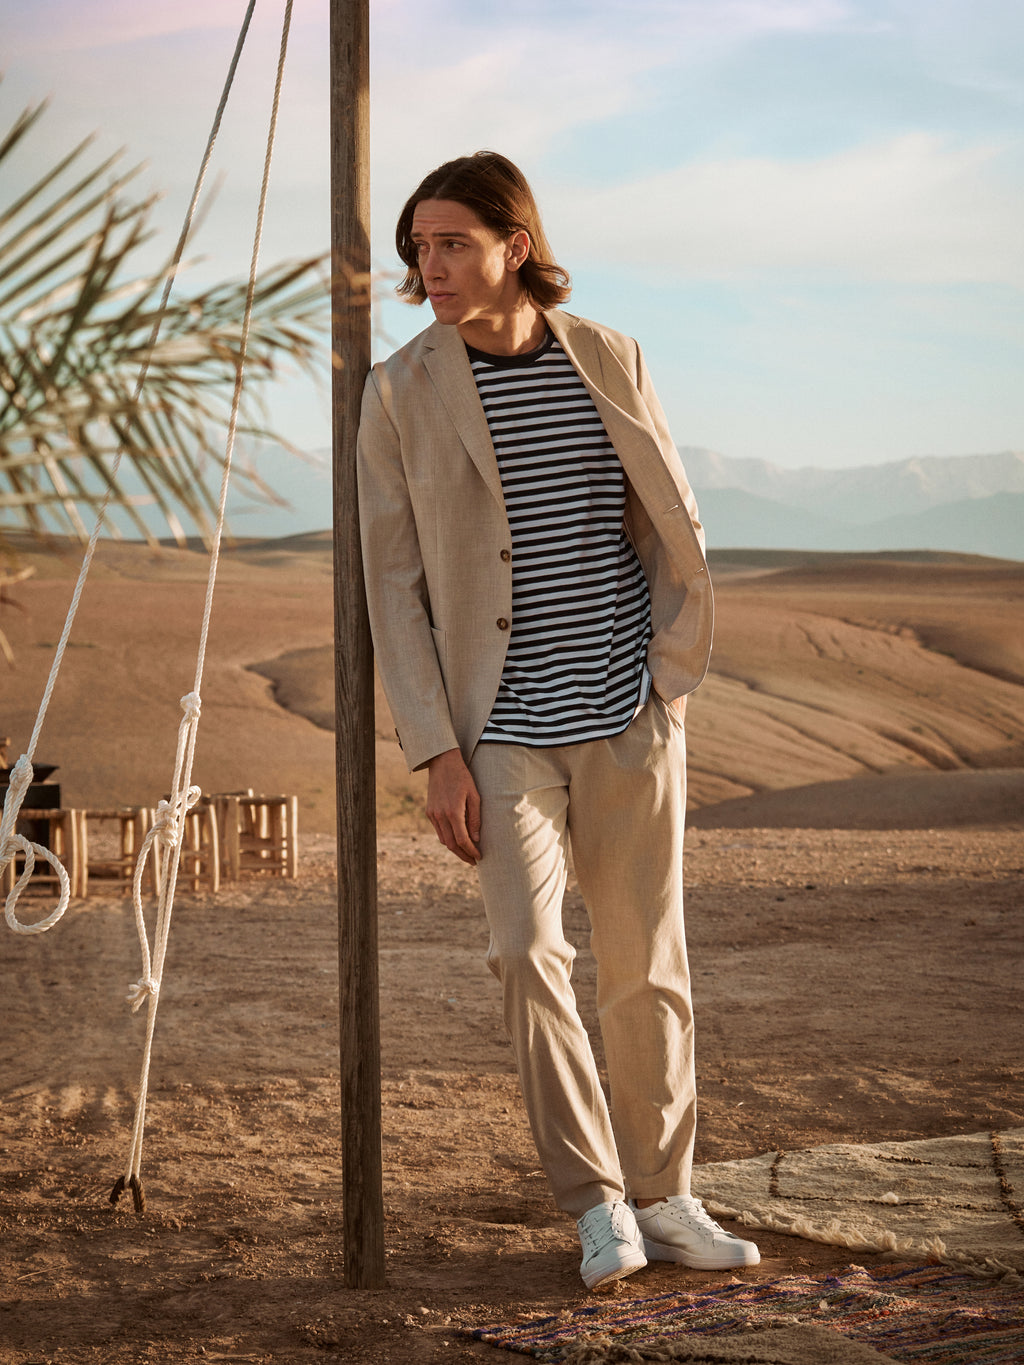 Male wearing beige pants, beige blazer and striped T-shirt in a desert